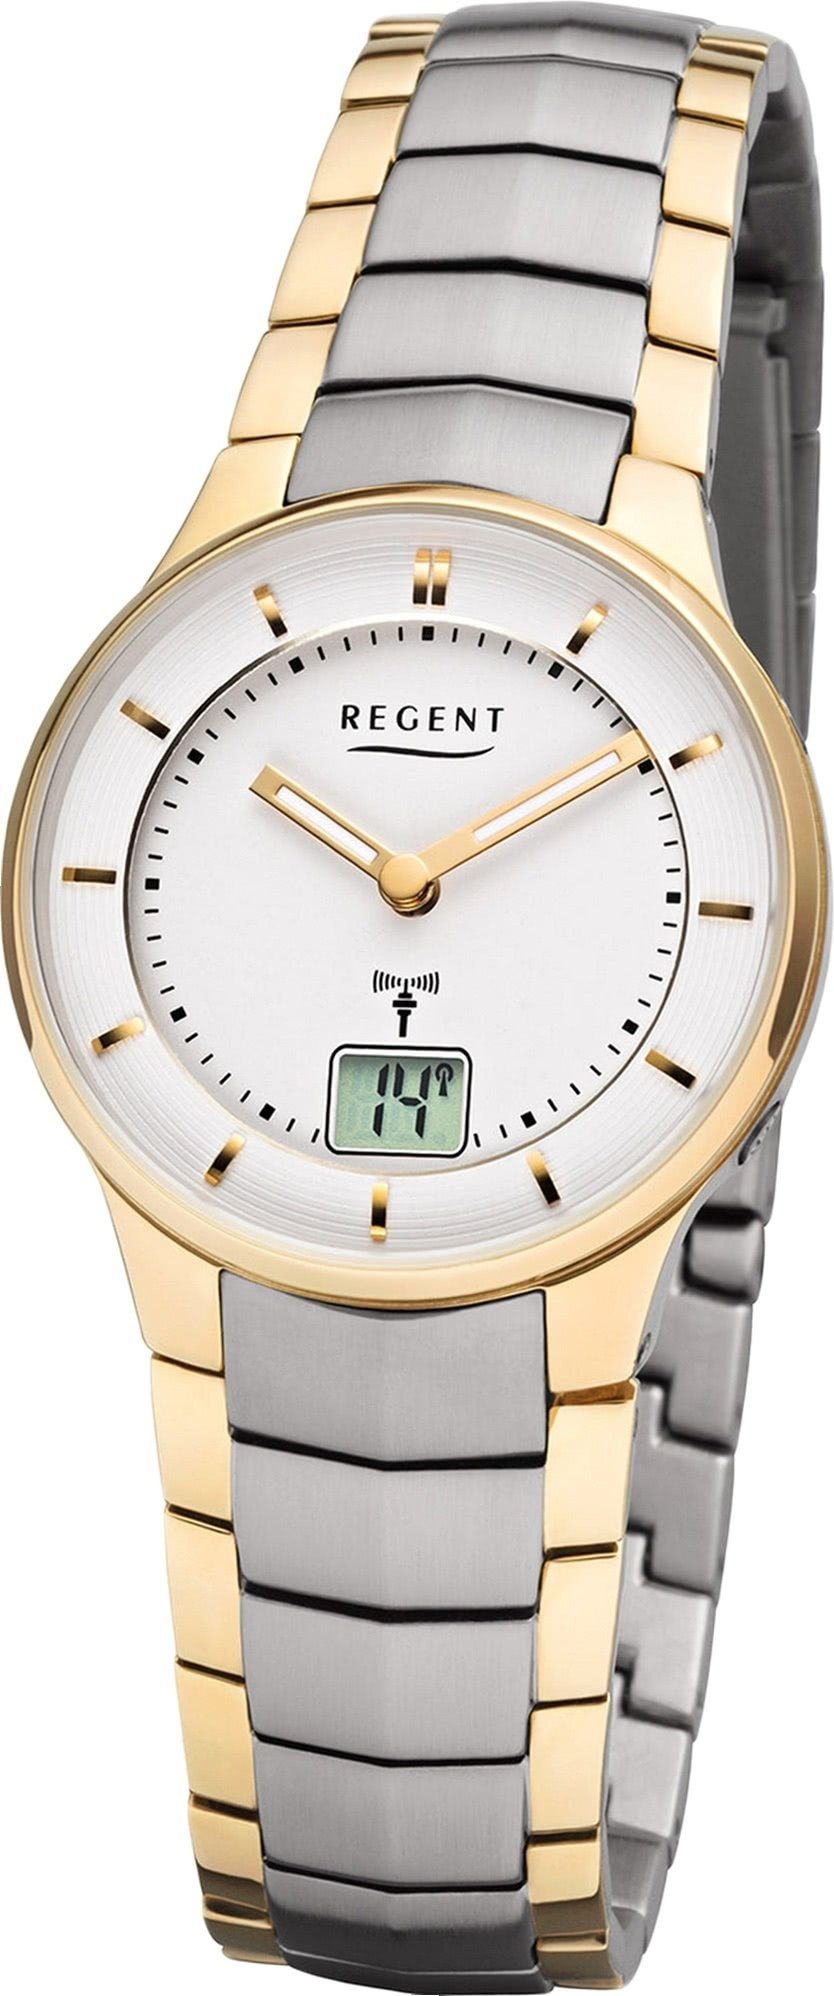 Damen FR-261, klein Metall gold, Funkuhr (ca. Regent Regent 30mm) silber, Gehäuse, Damenuhr Metallarmband Uhr rundes